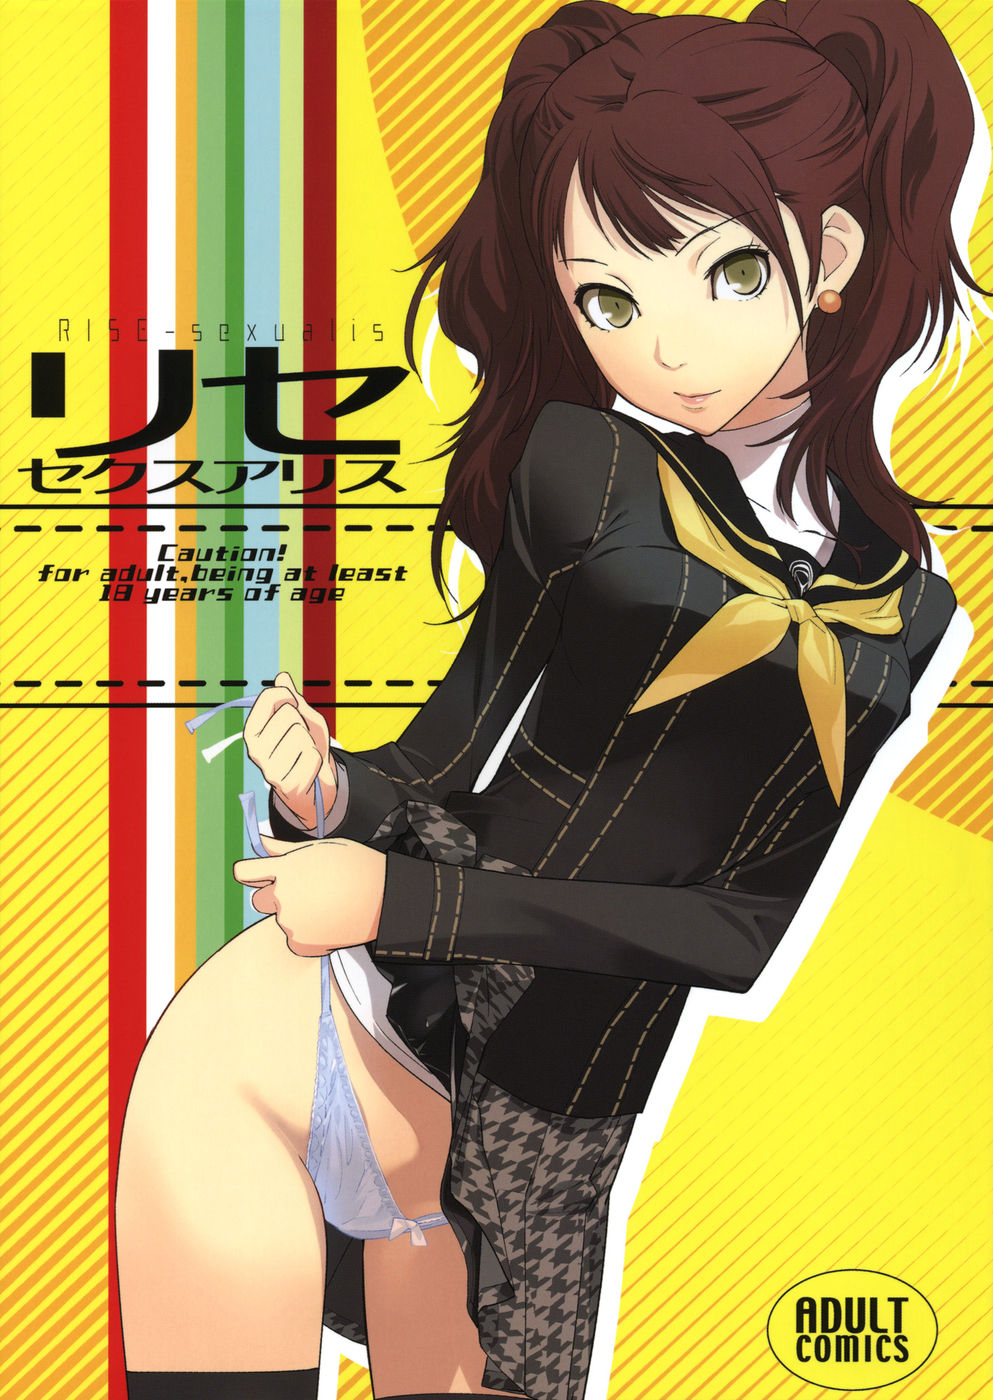 Hentai Manga Comic-Rise Sexualis-Read-1